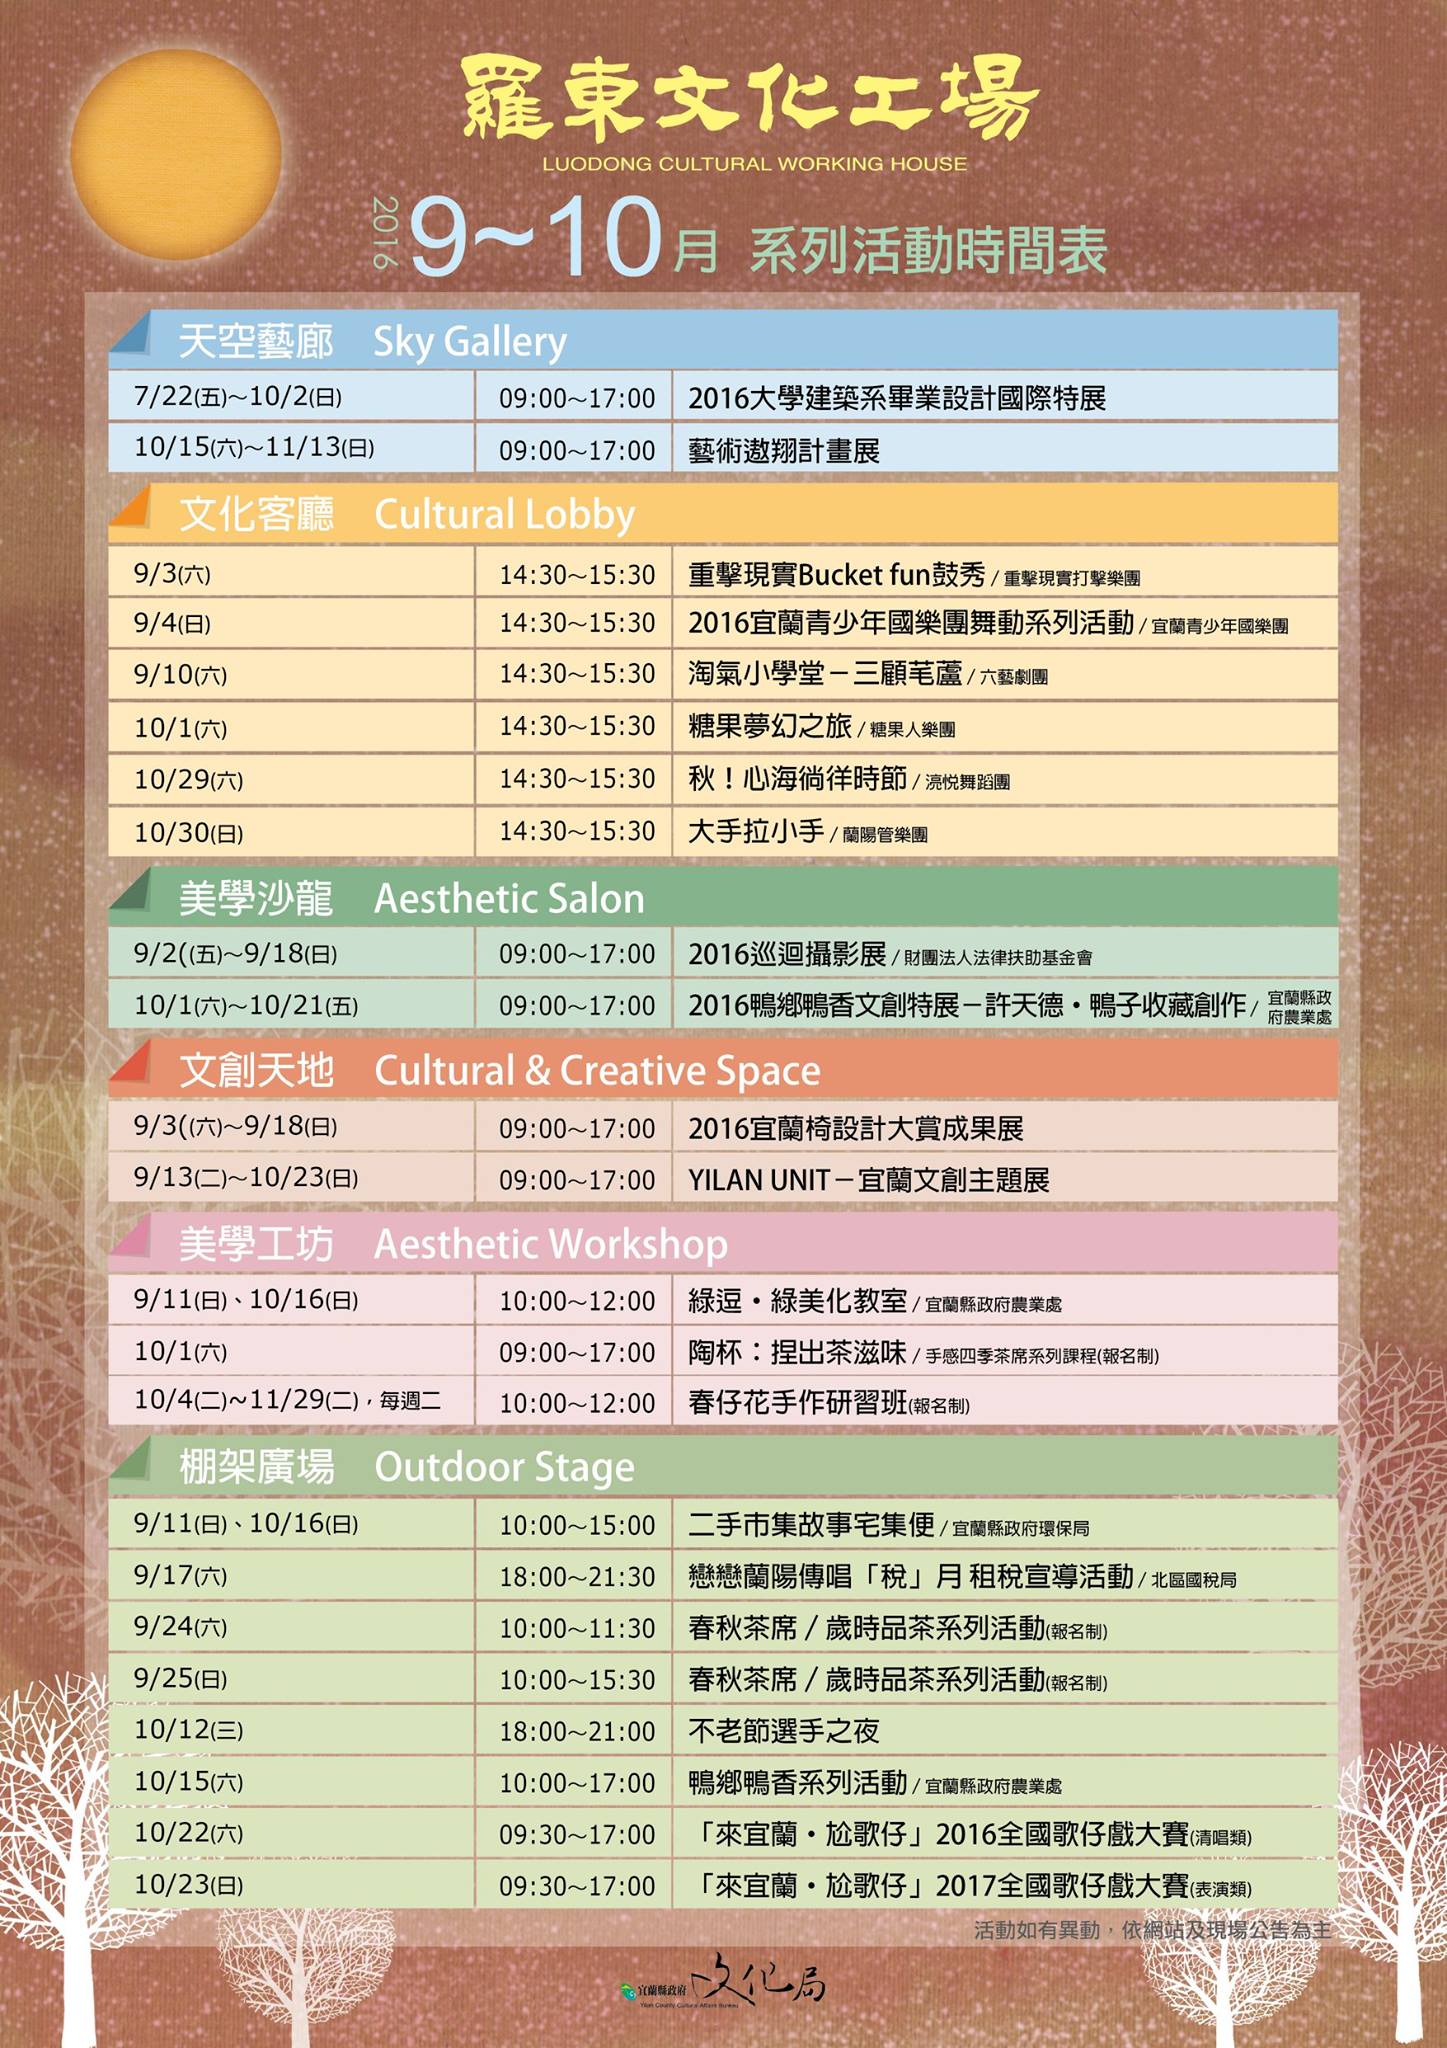 羅東文化工場9 10月系列活動時間表 4dd6e